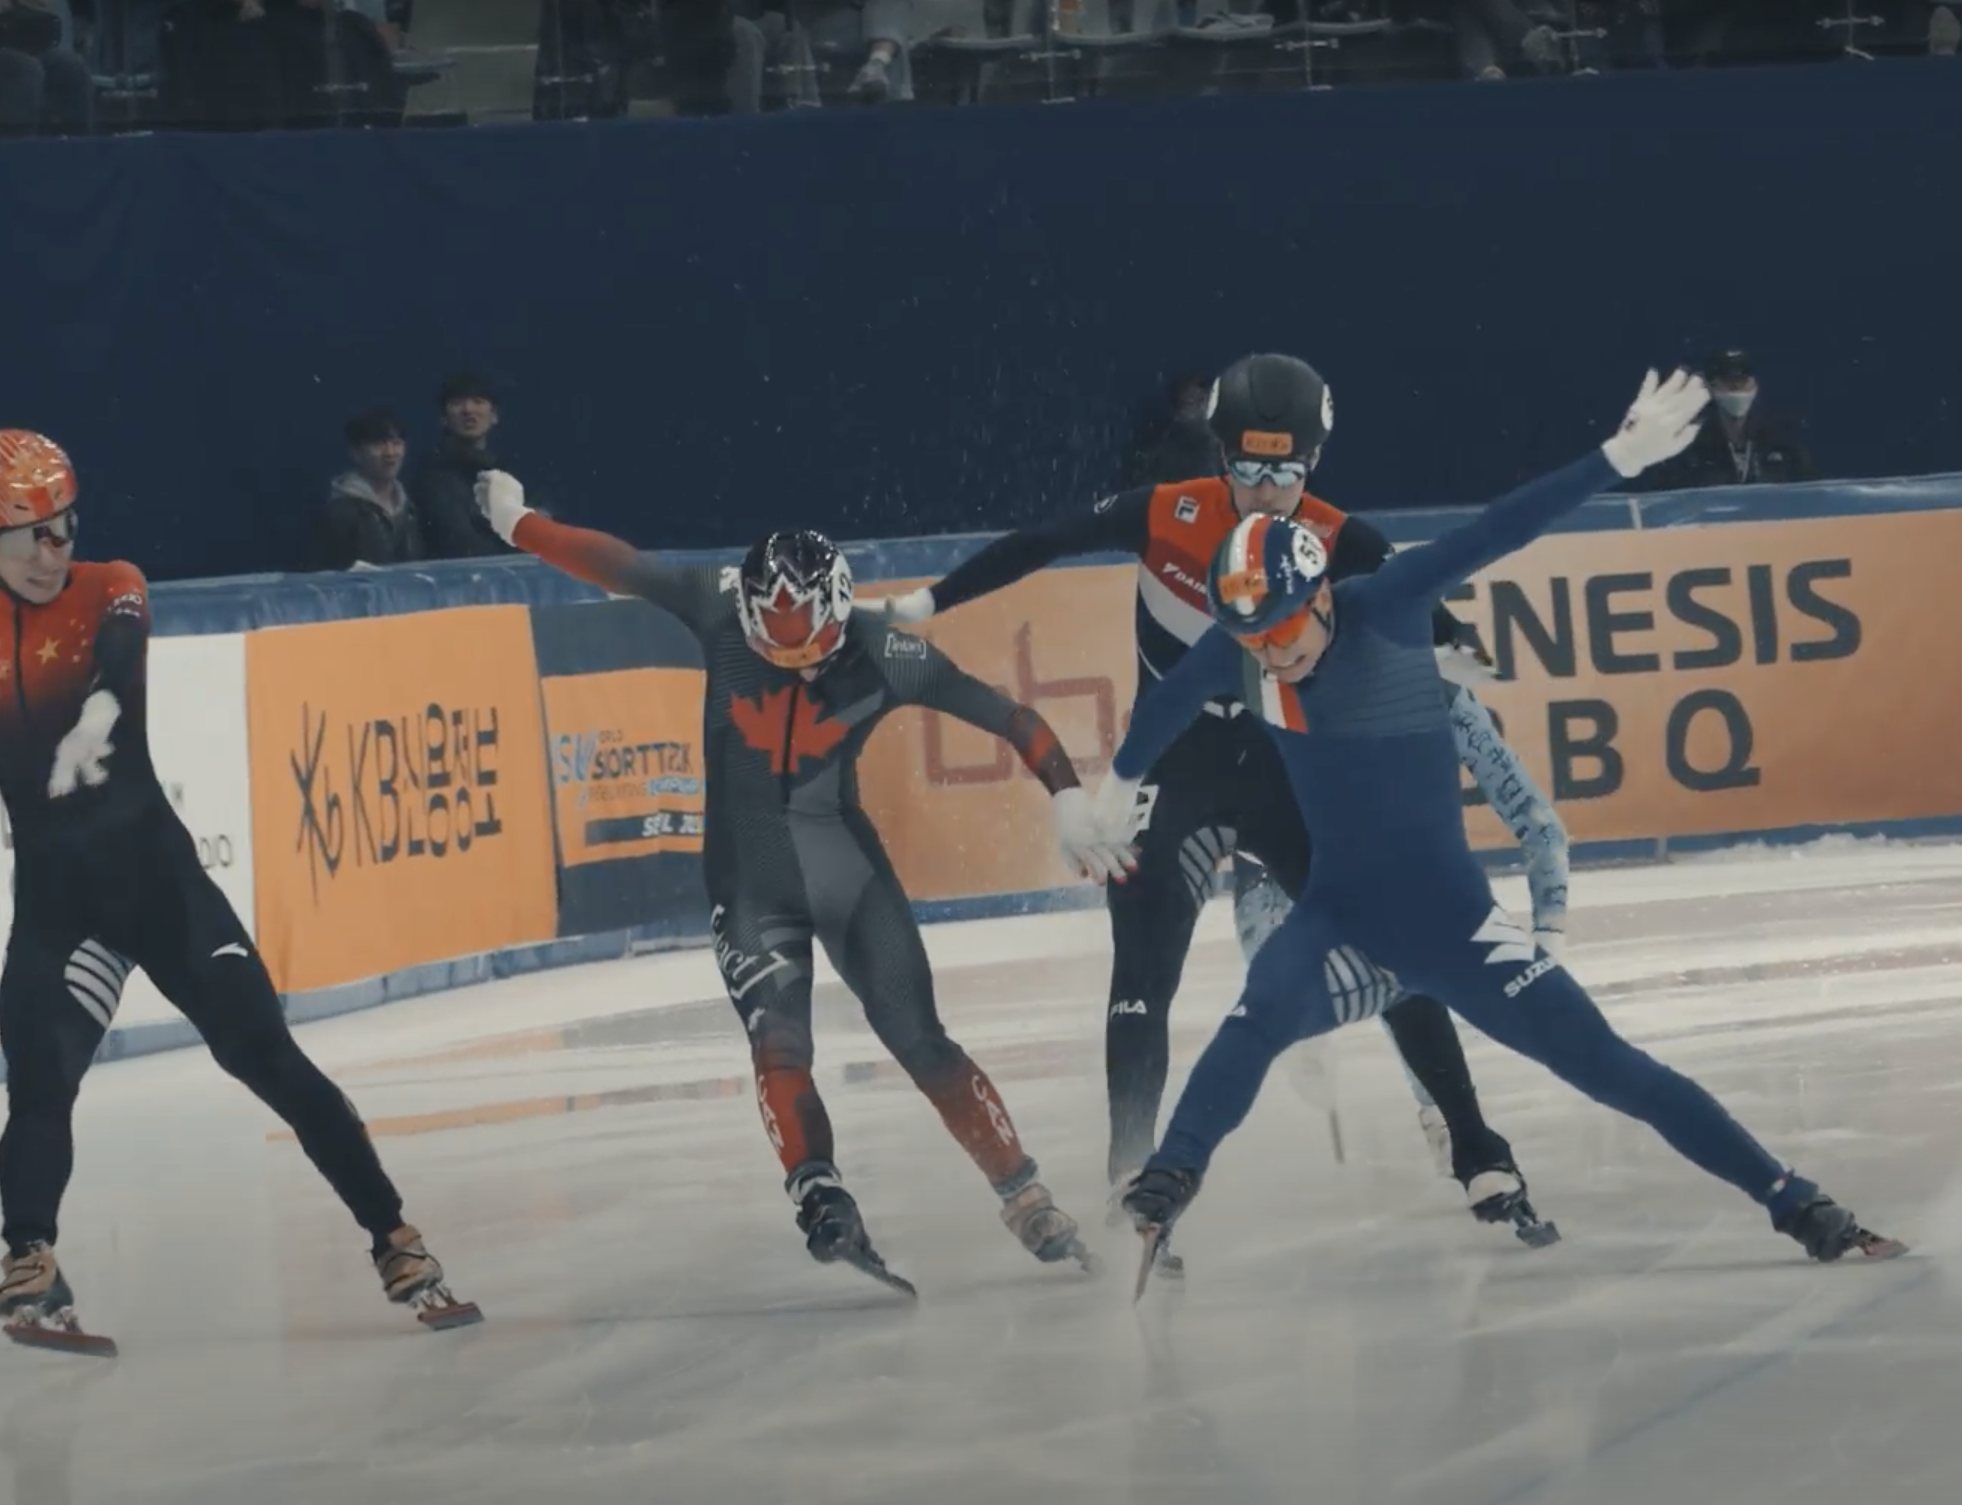 Championnats Mondiaux de patinage de vitesse et patinage artistique